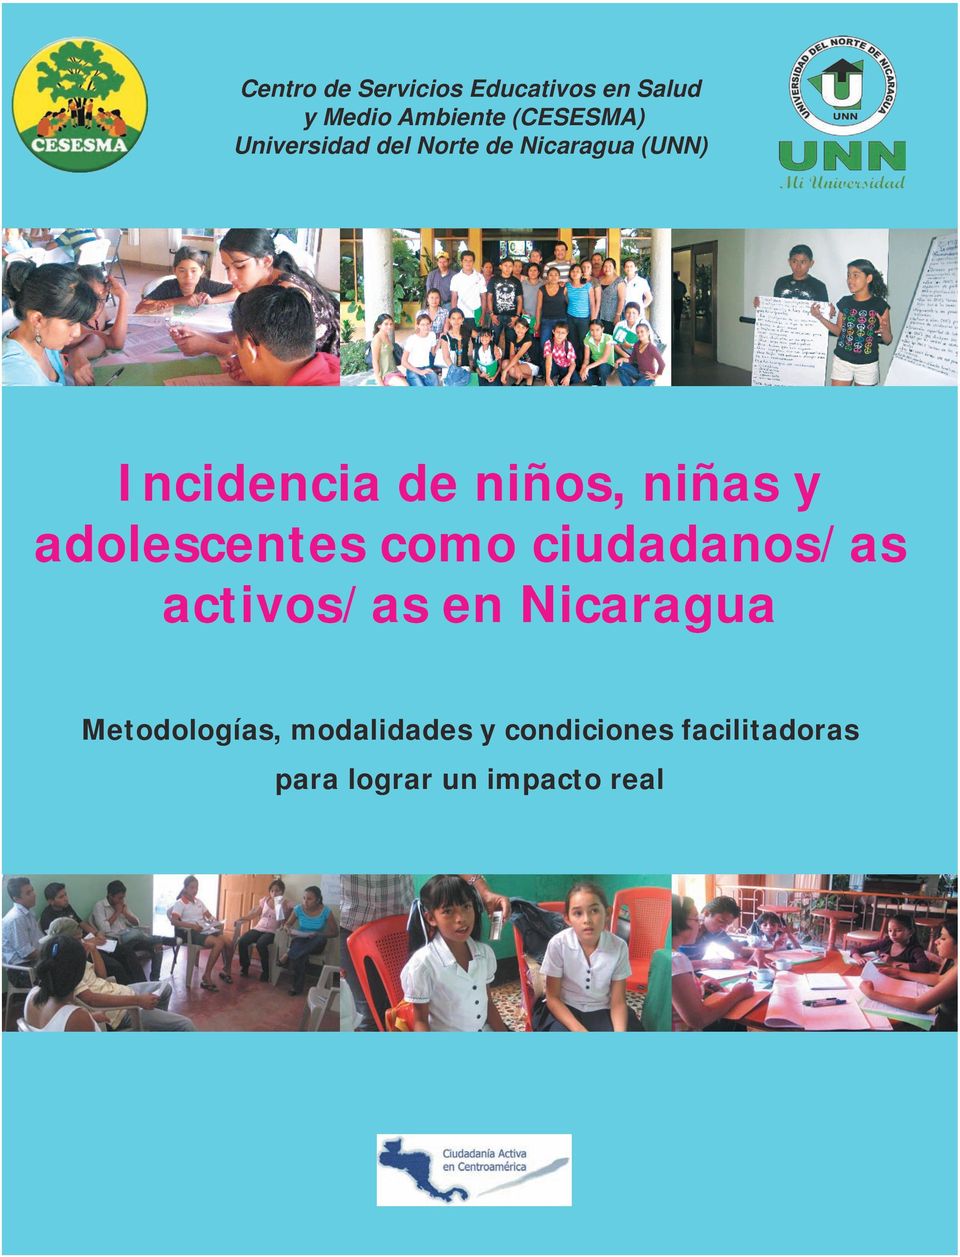 y adolescentes como ciudadanos/as activos/as en Nicaragua